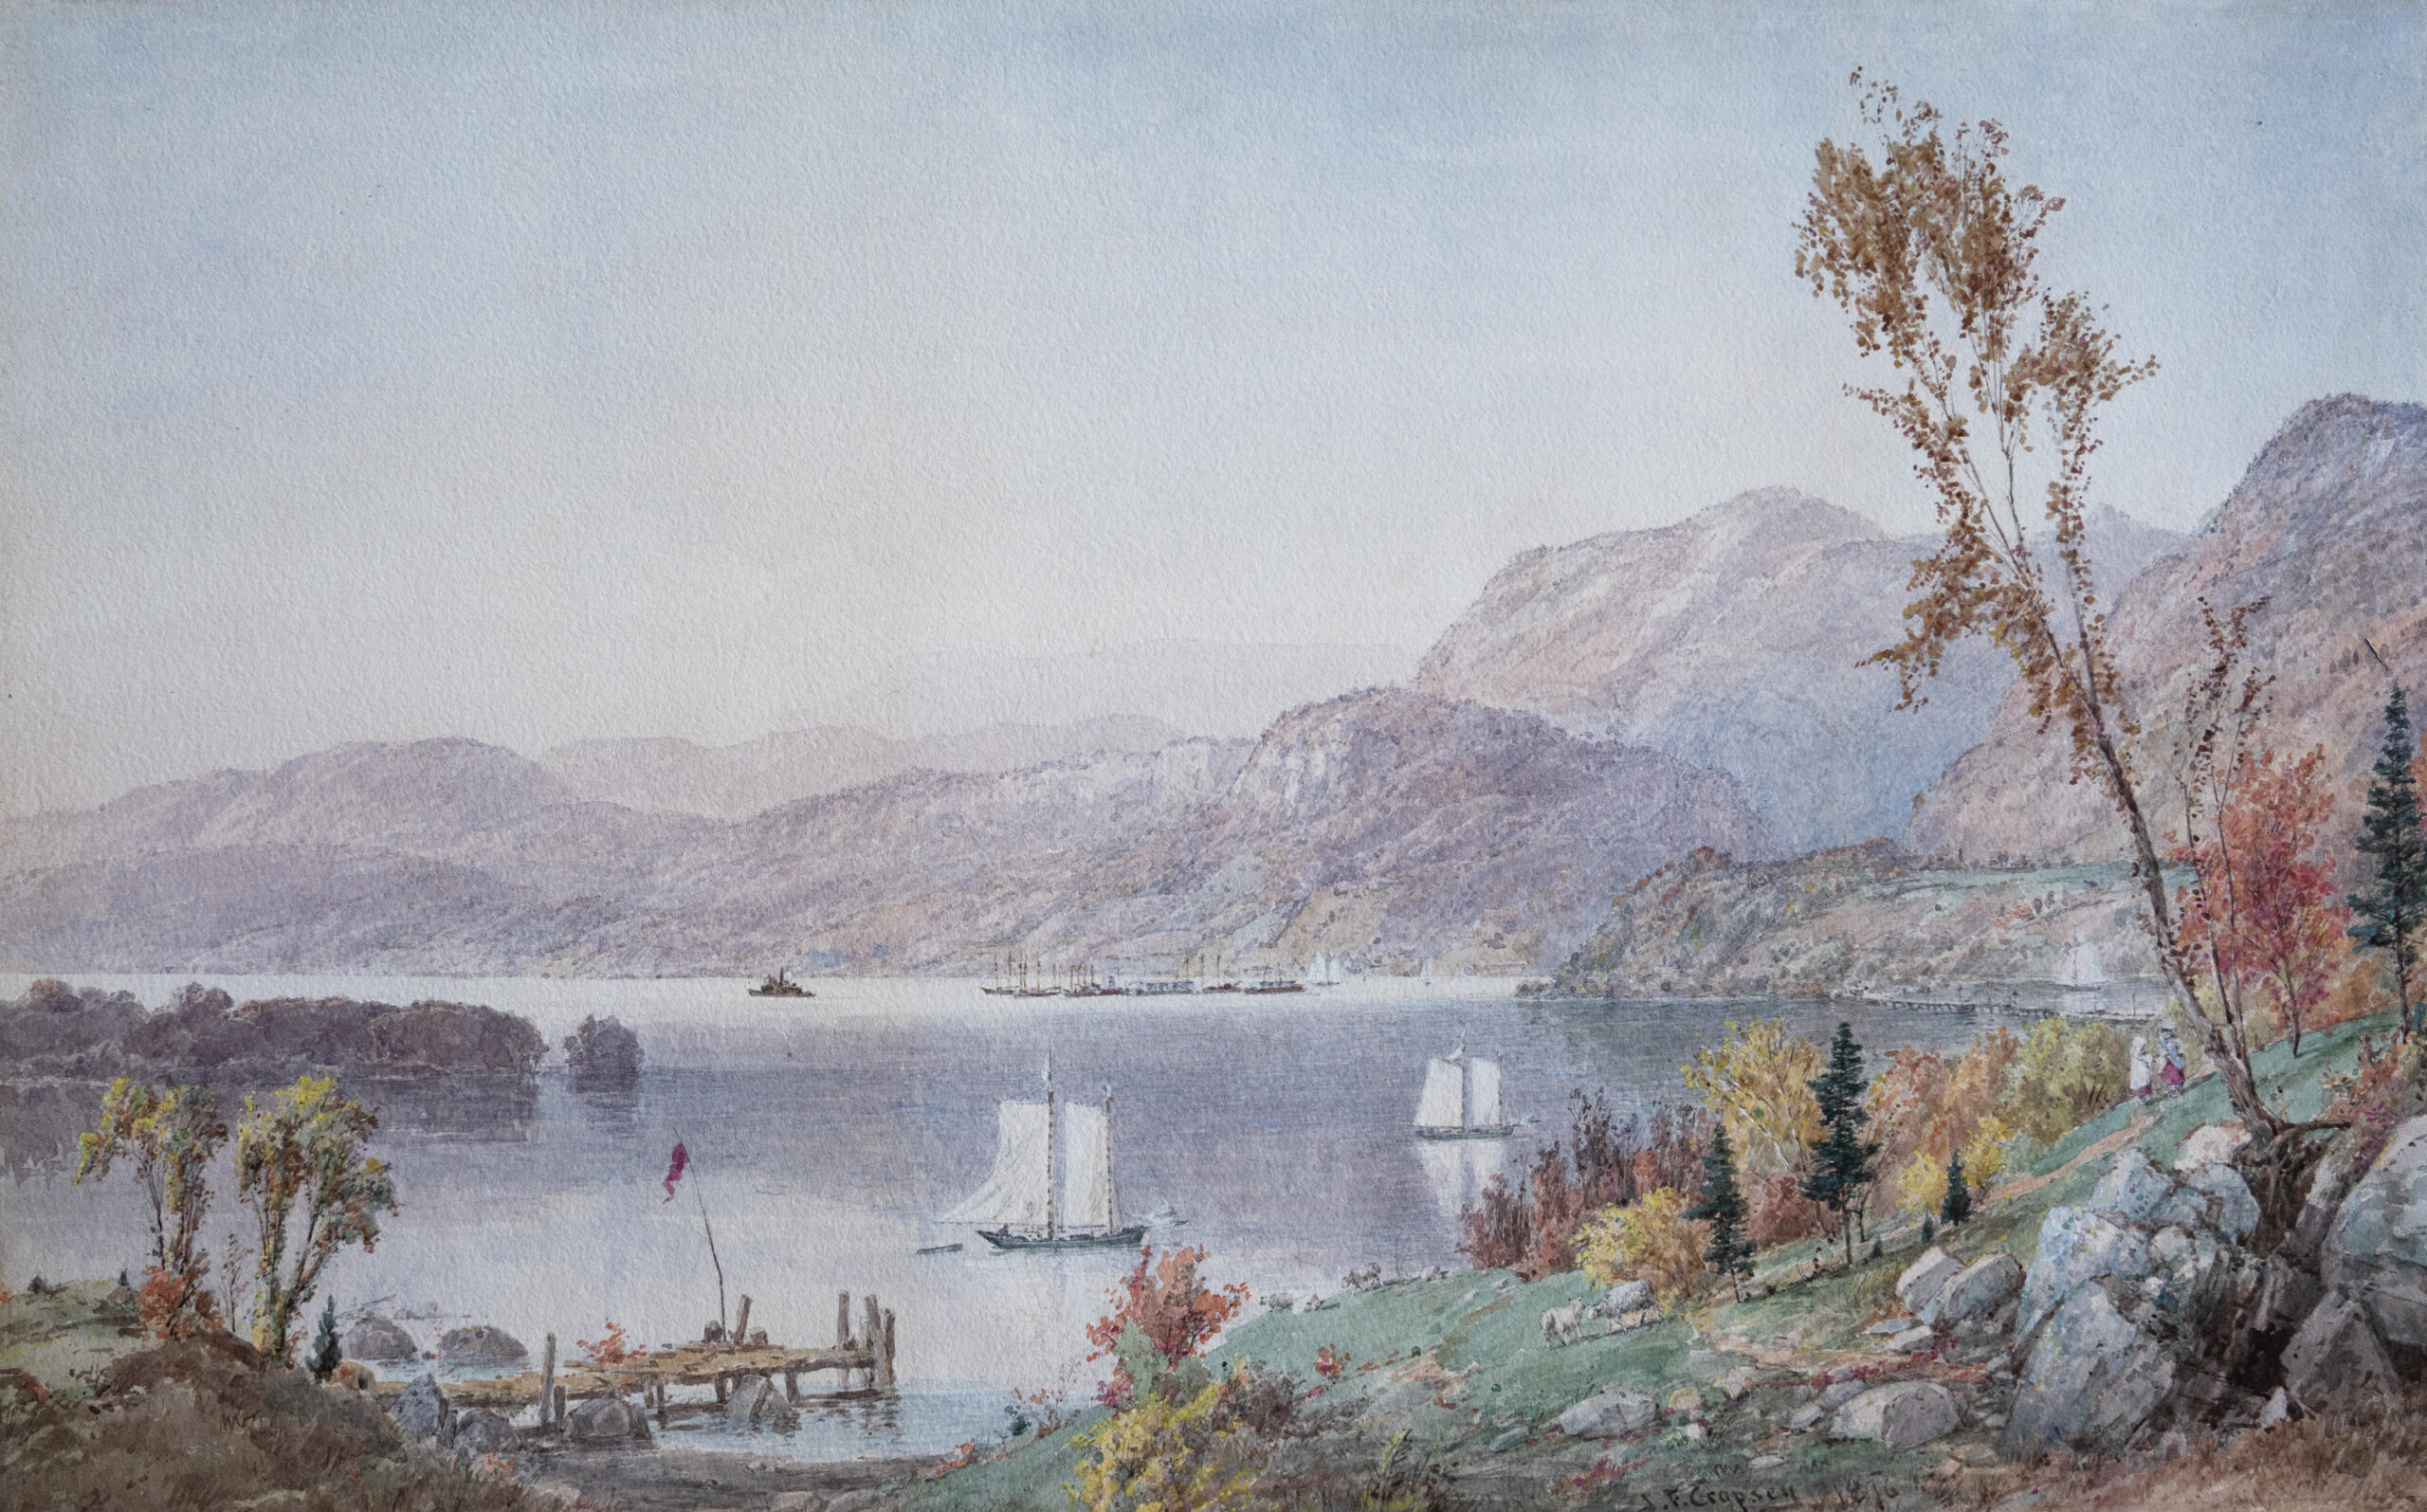 watercolor landscape 